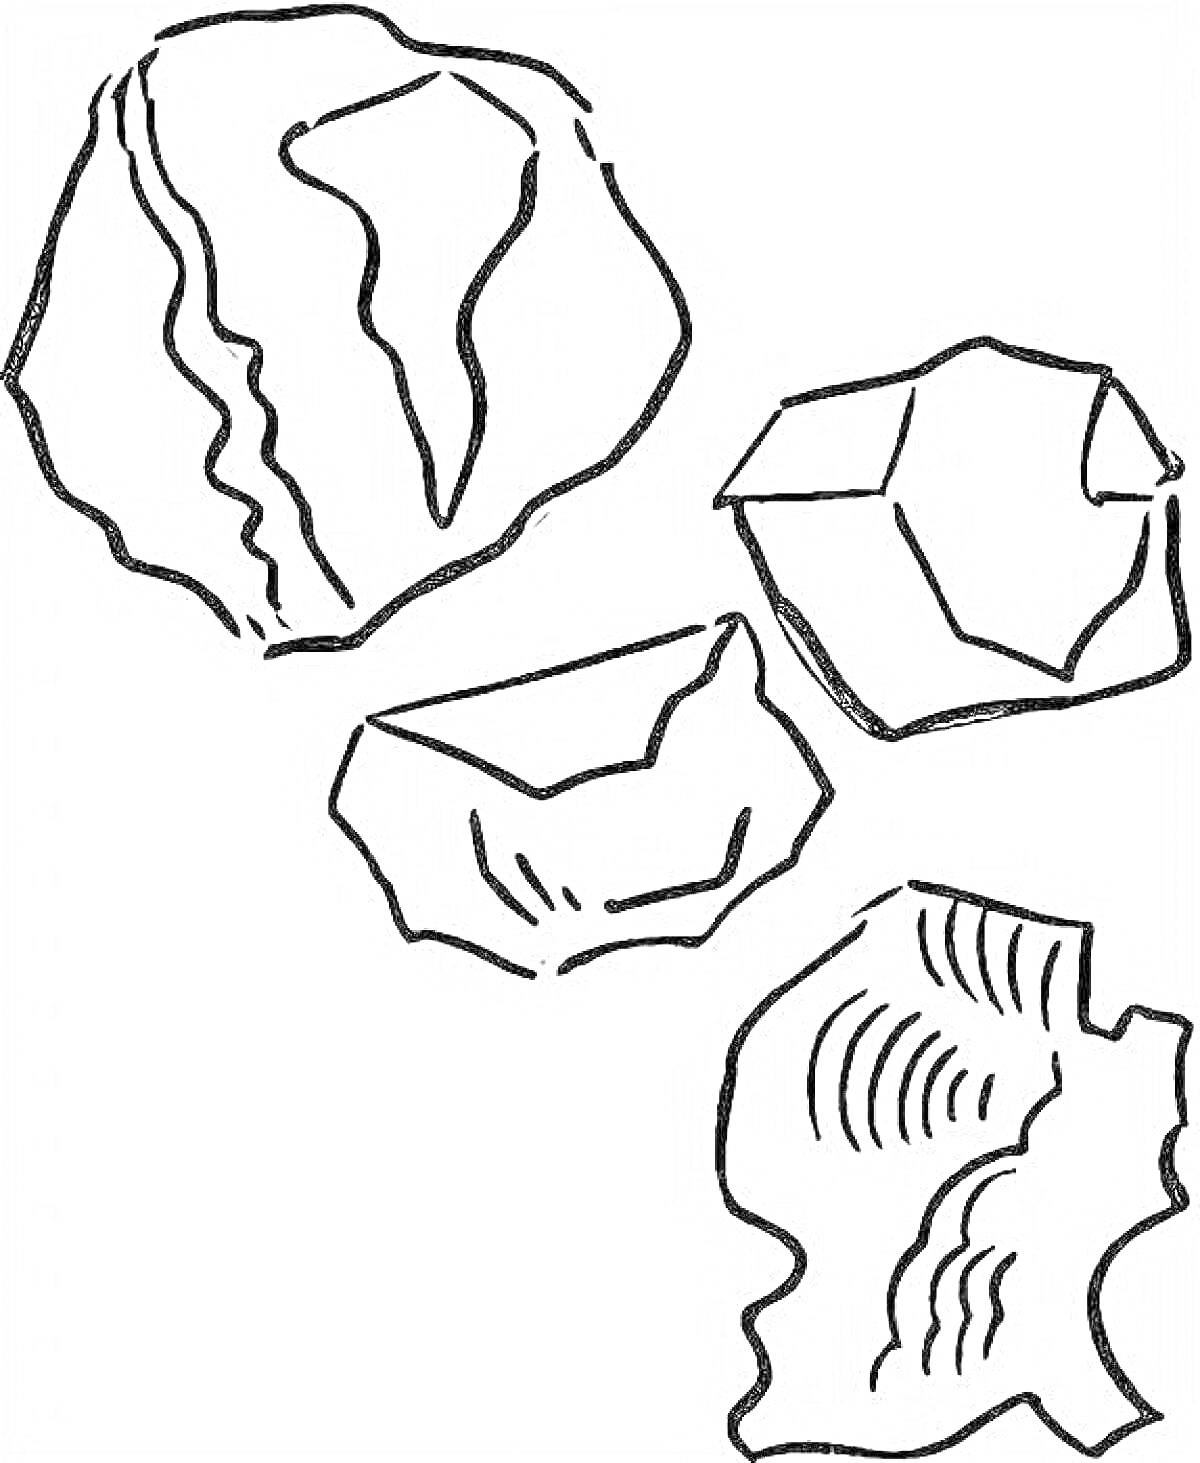 Изображение различных полезных ископаемых (камней)